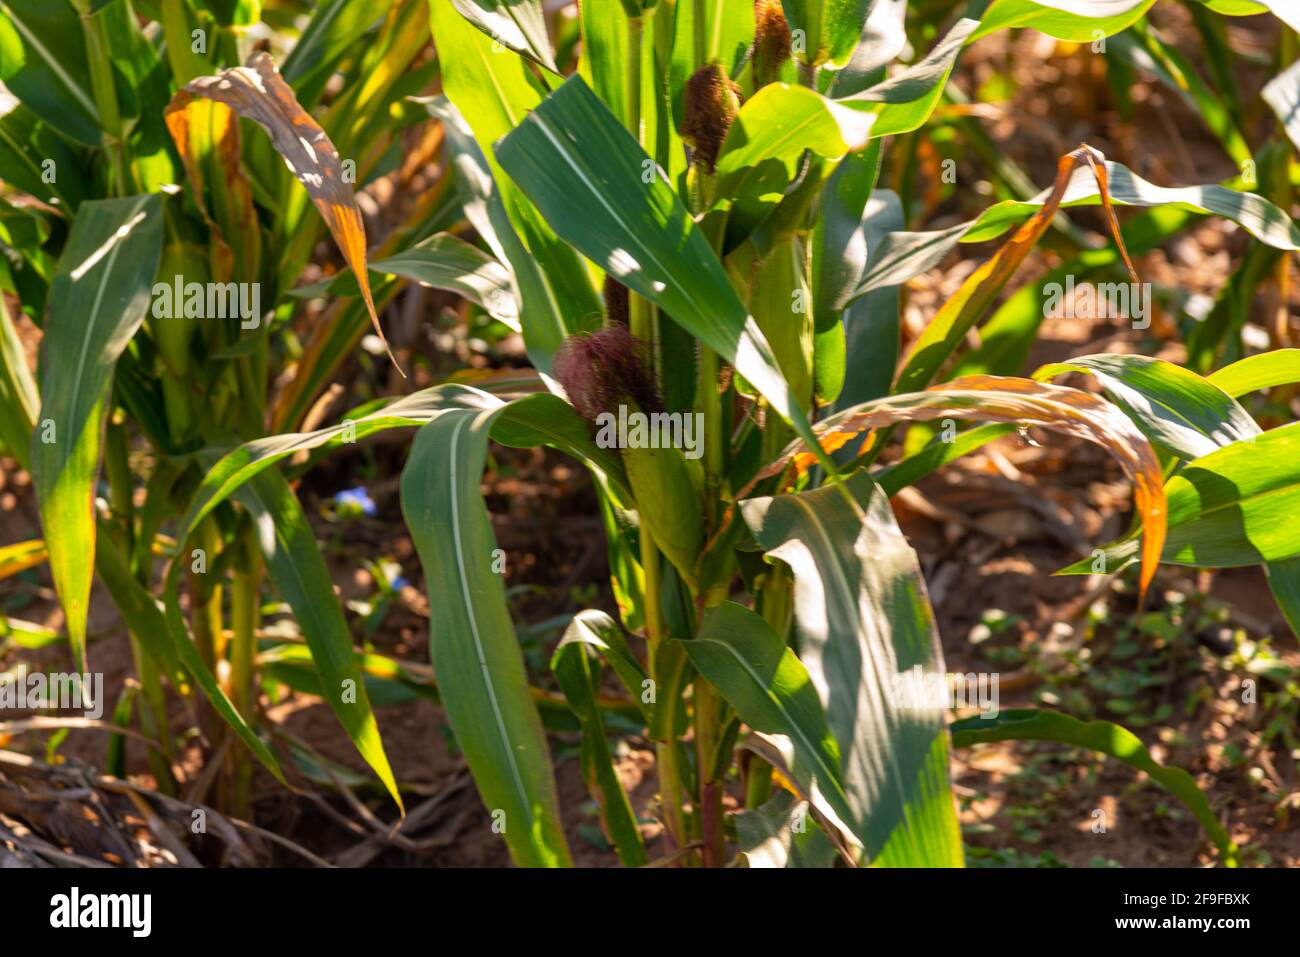 Maisplantage im Stadium der Ohrbildung. In vielen Teilen der Welt  angebautes Getreide, das als menschliche Nahrung oder als Tierfutter  verwendet wird. Pflanzen in Blüte und redproductio Stockfotografie - Alamy